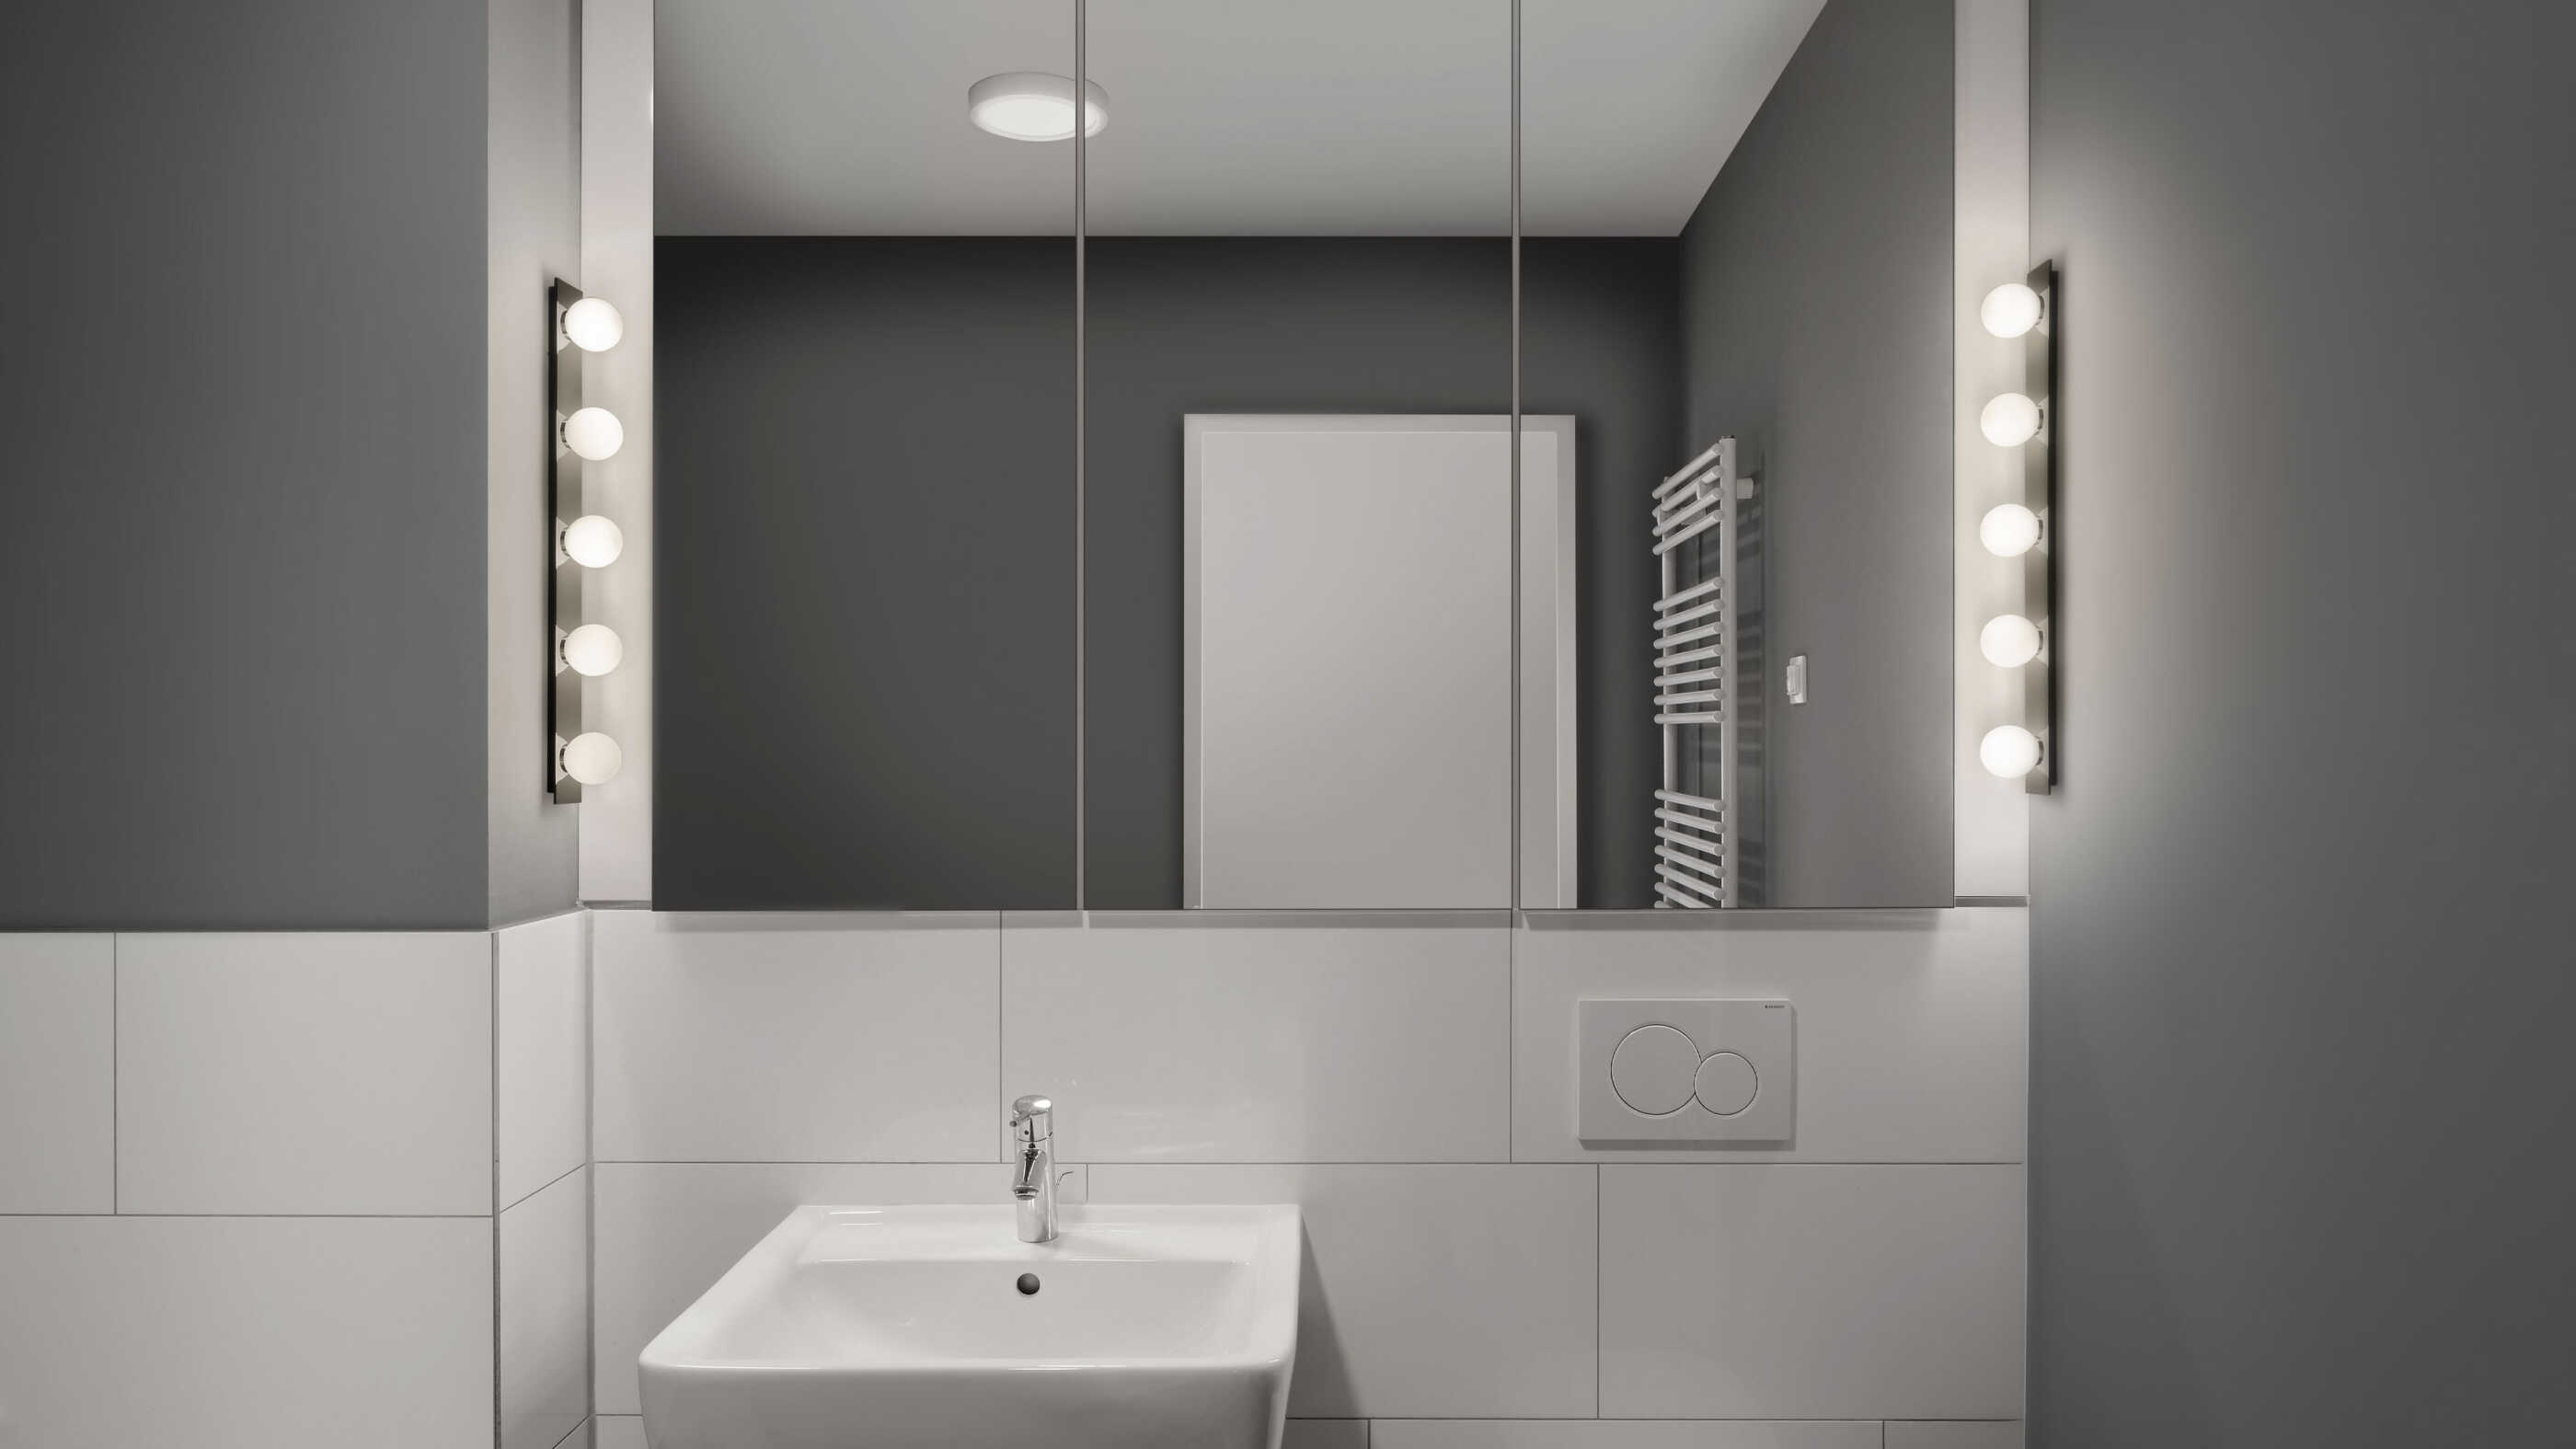 Ein minimalistisch eingerichtetes Badezimmer: Zwei Wandleuchten auf beiden Seiten des Spiegels sorgen für ausreichende Beleuchtung, das Raumlicht wird von einer Deckenleuchte in der Raummitte ergänzt. (Foto: Prediger Lichtberater)